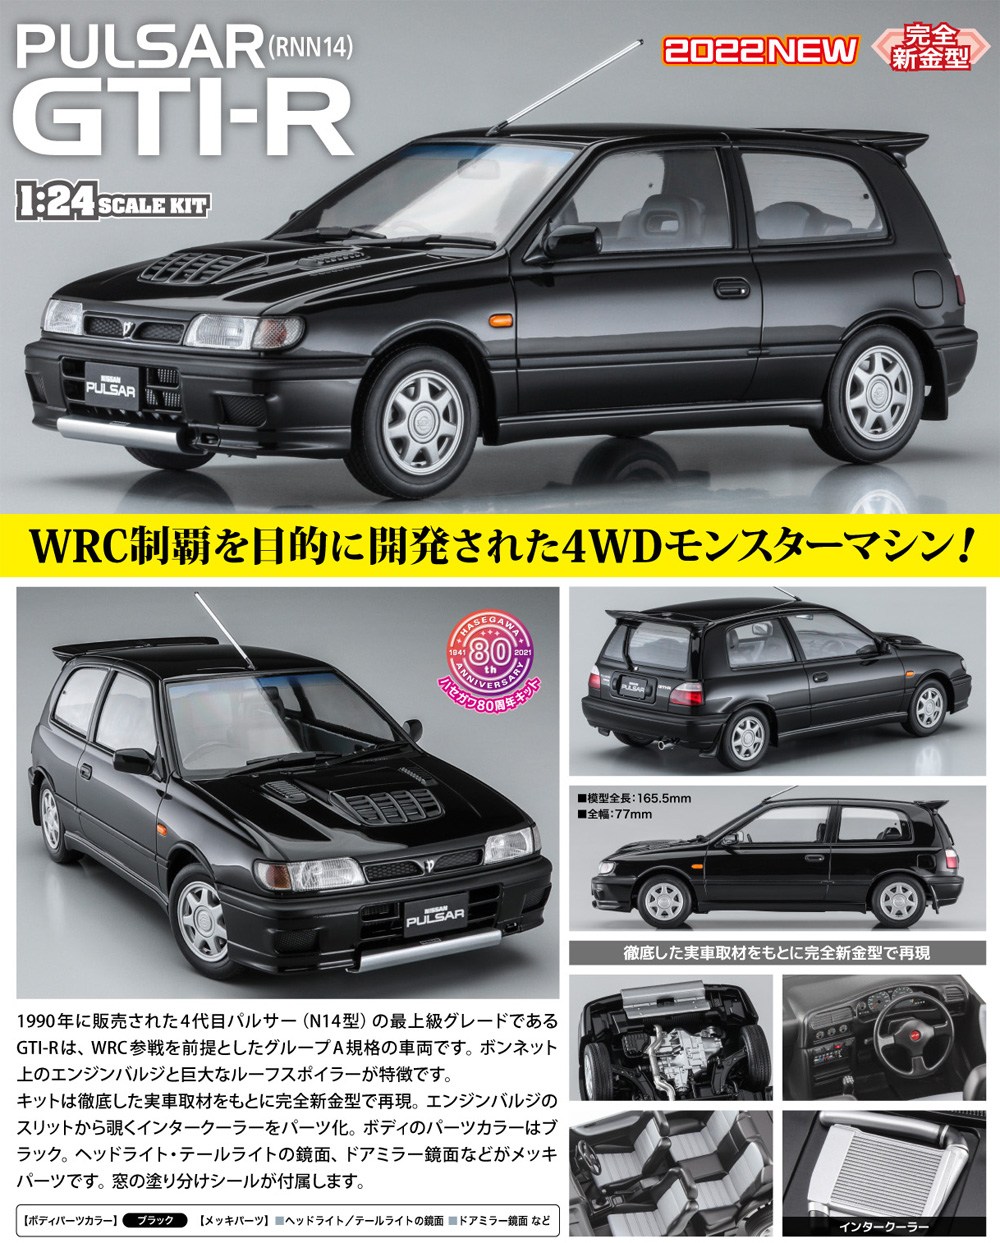 ニッサン パルサー (RNN14) GTI-R プラモデル (ハセガワ 1/24 自動車 HCシリーズ No.HC-047) 商品画像_2